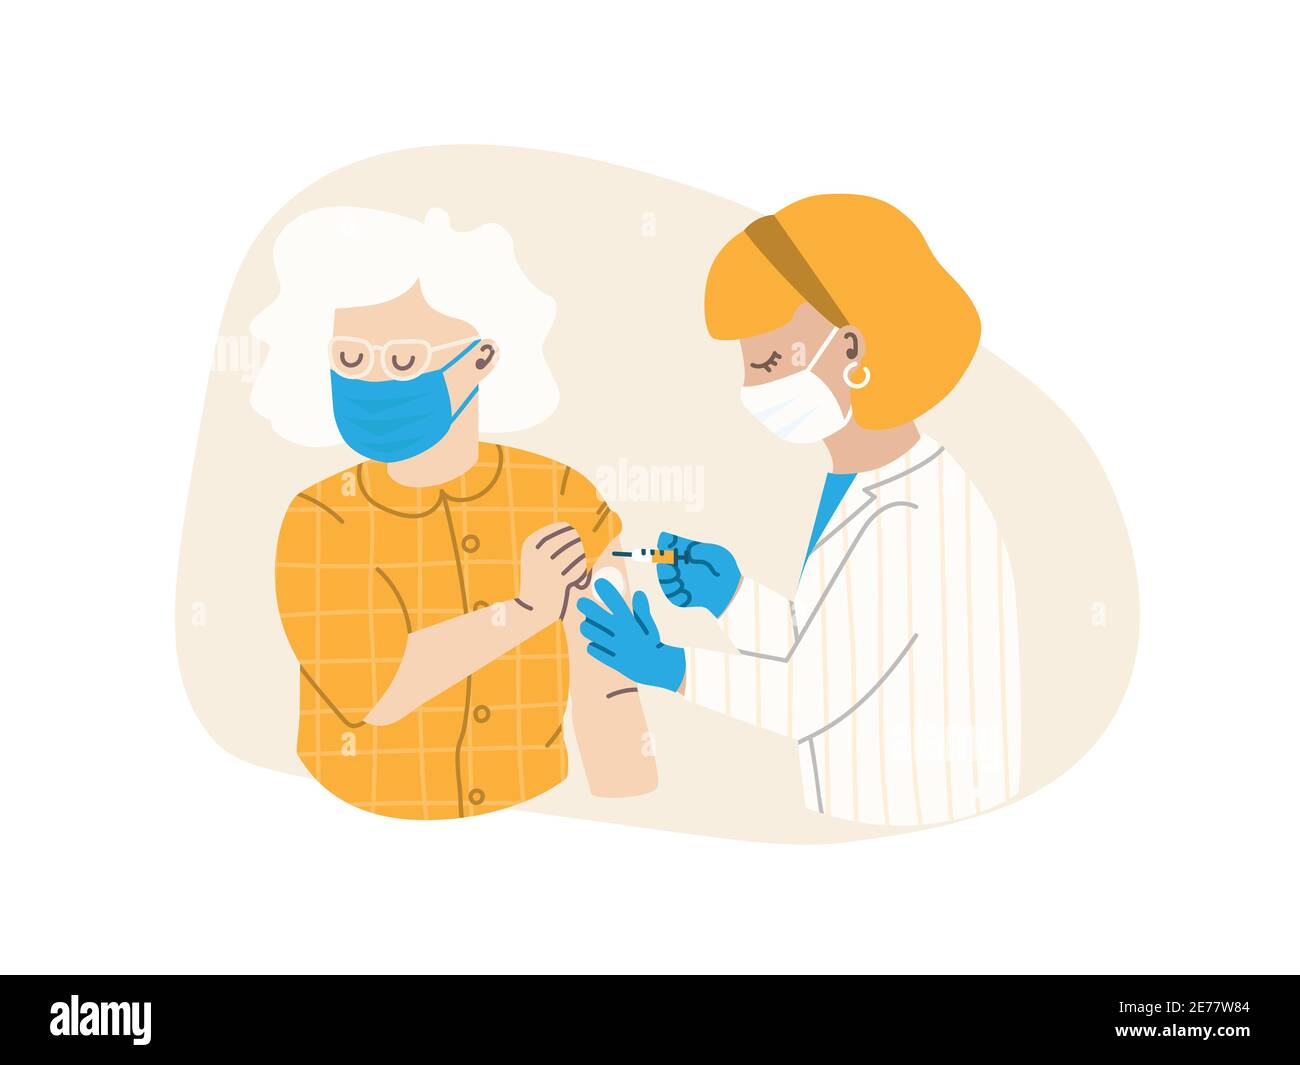 Der Arzt oder die Krankenschwester injiziert den Impfstoff. Die Patientin ist eine ältere Frau. Grippeimpfungskonzept, Virusimpfstoff. Vektorgrafik flache Abbildung EPS 10. Stock Vektor